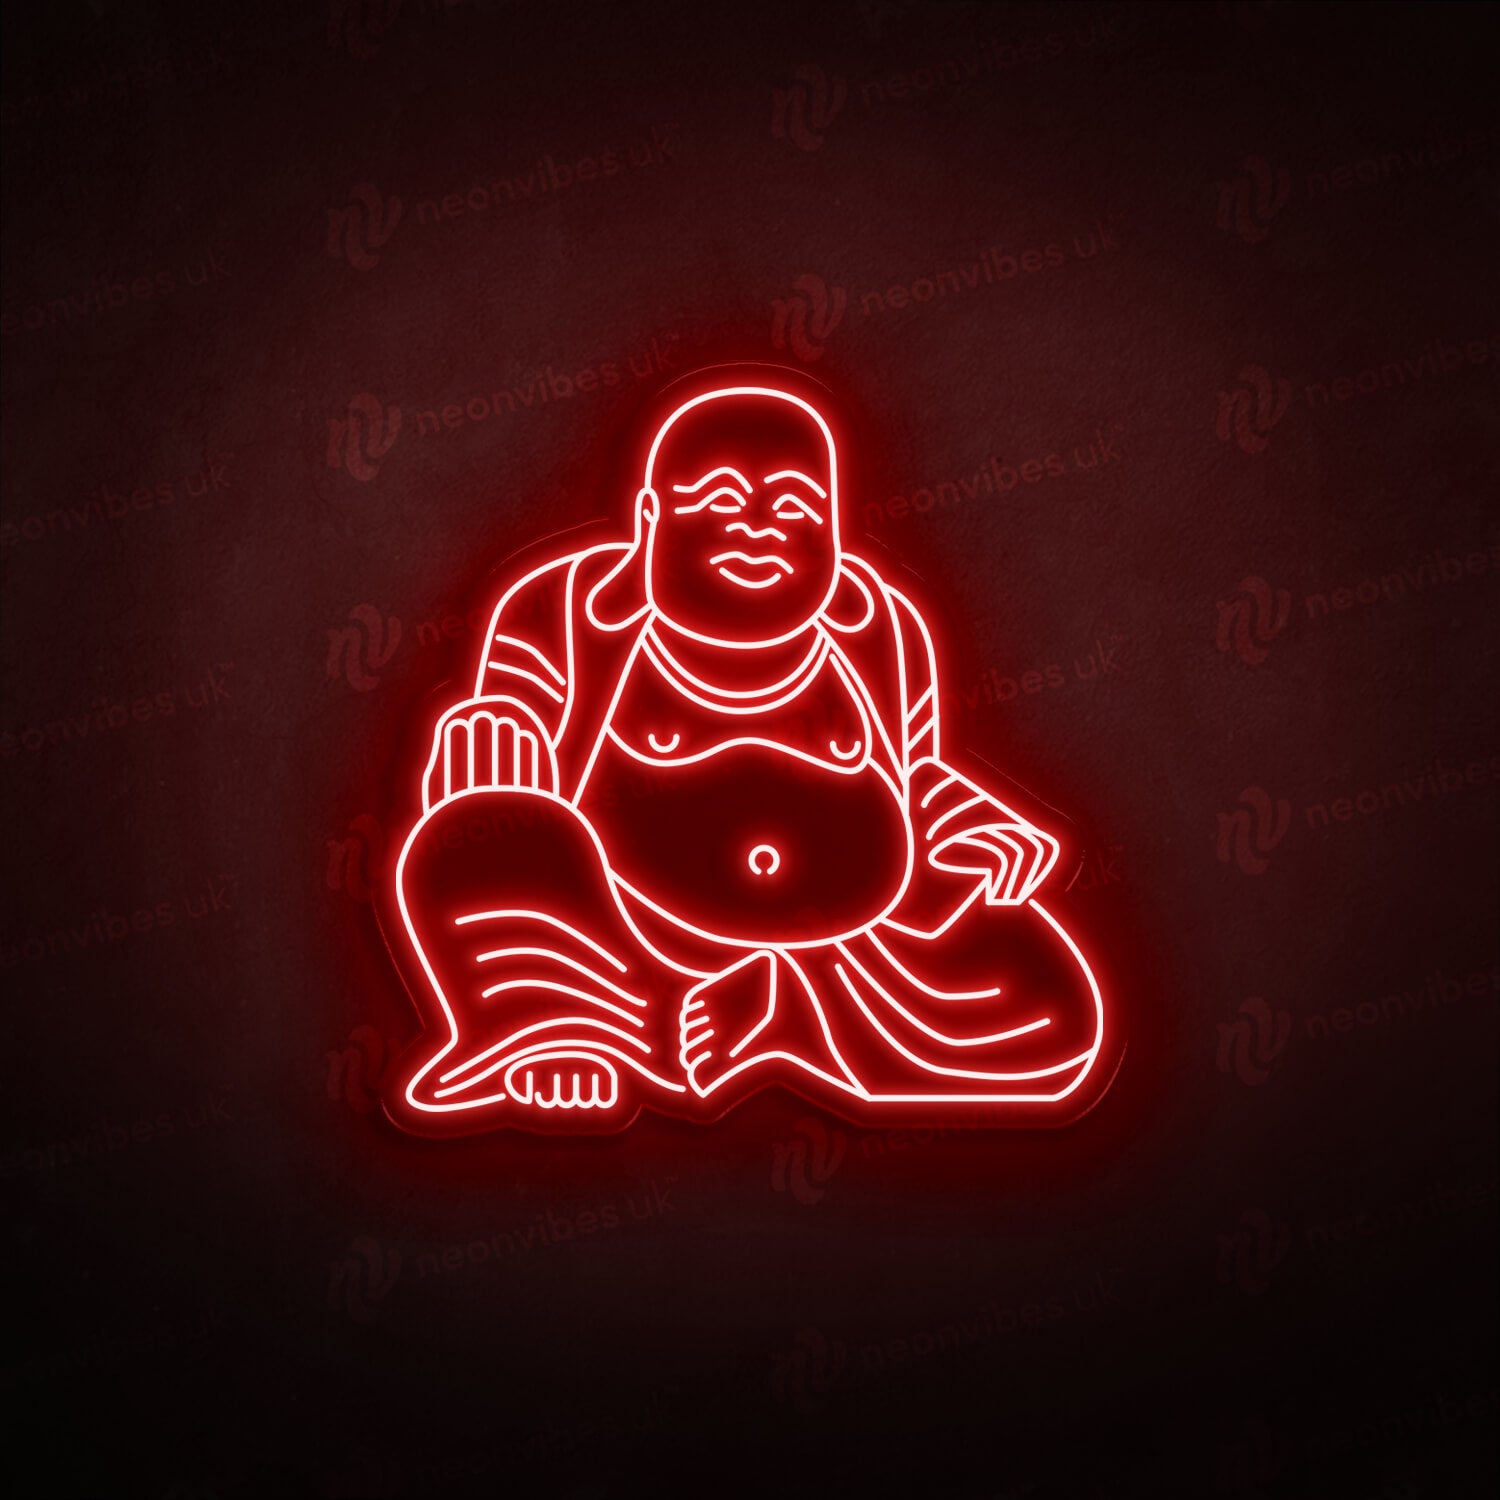 Buddha neon sign